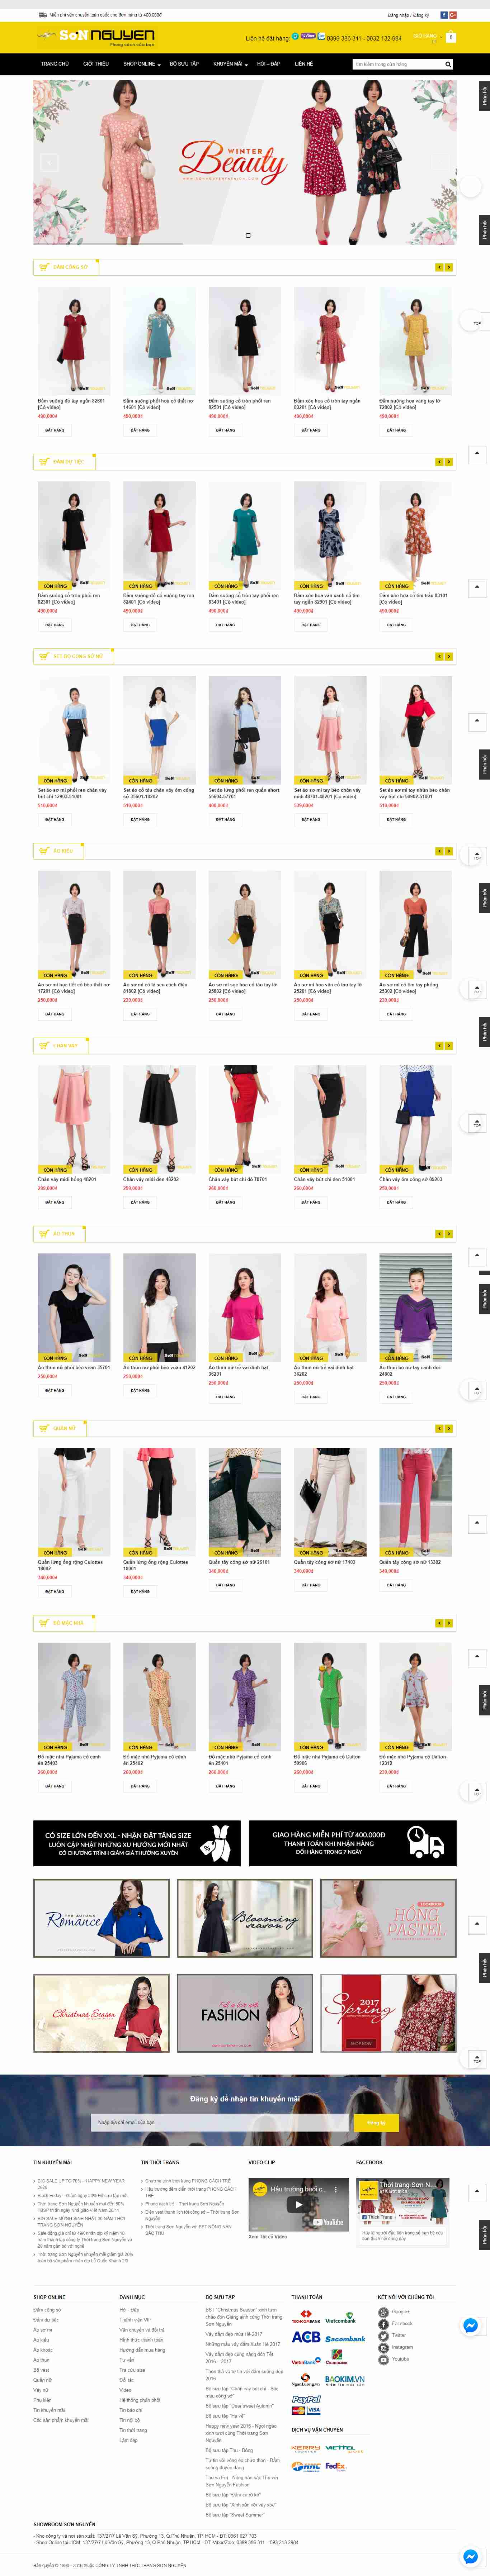 Thiết kế Website thời trang công sở - sonnguyenfashion.com